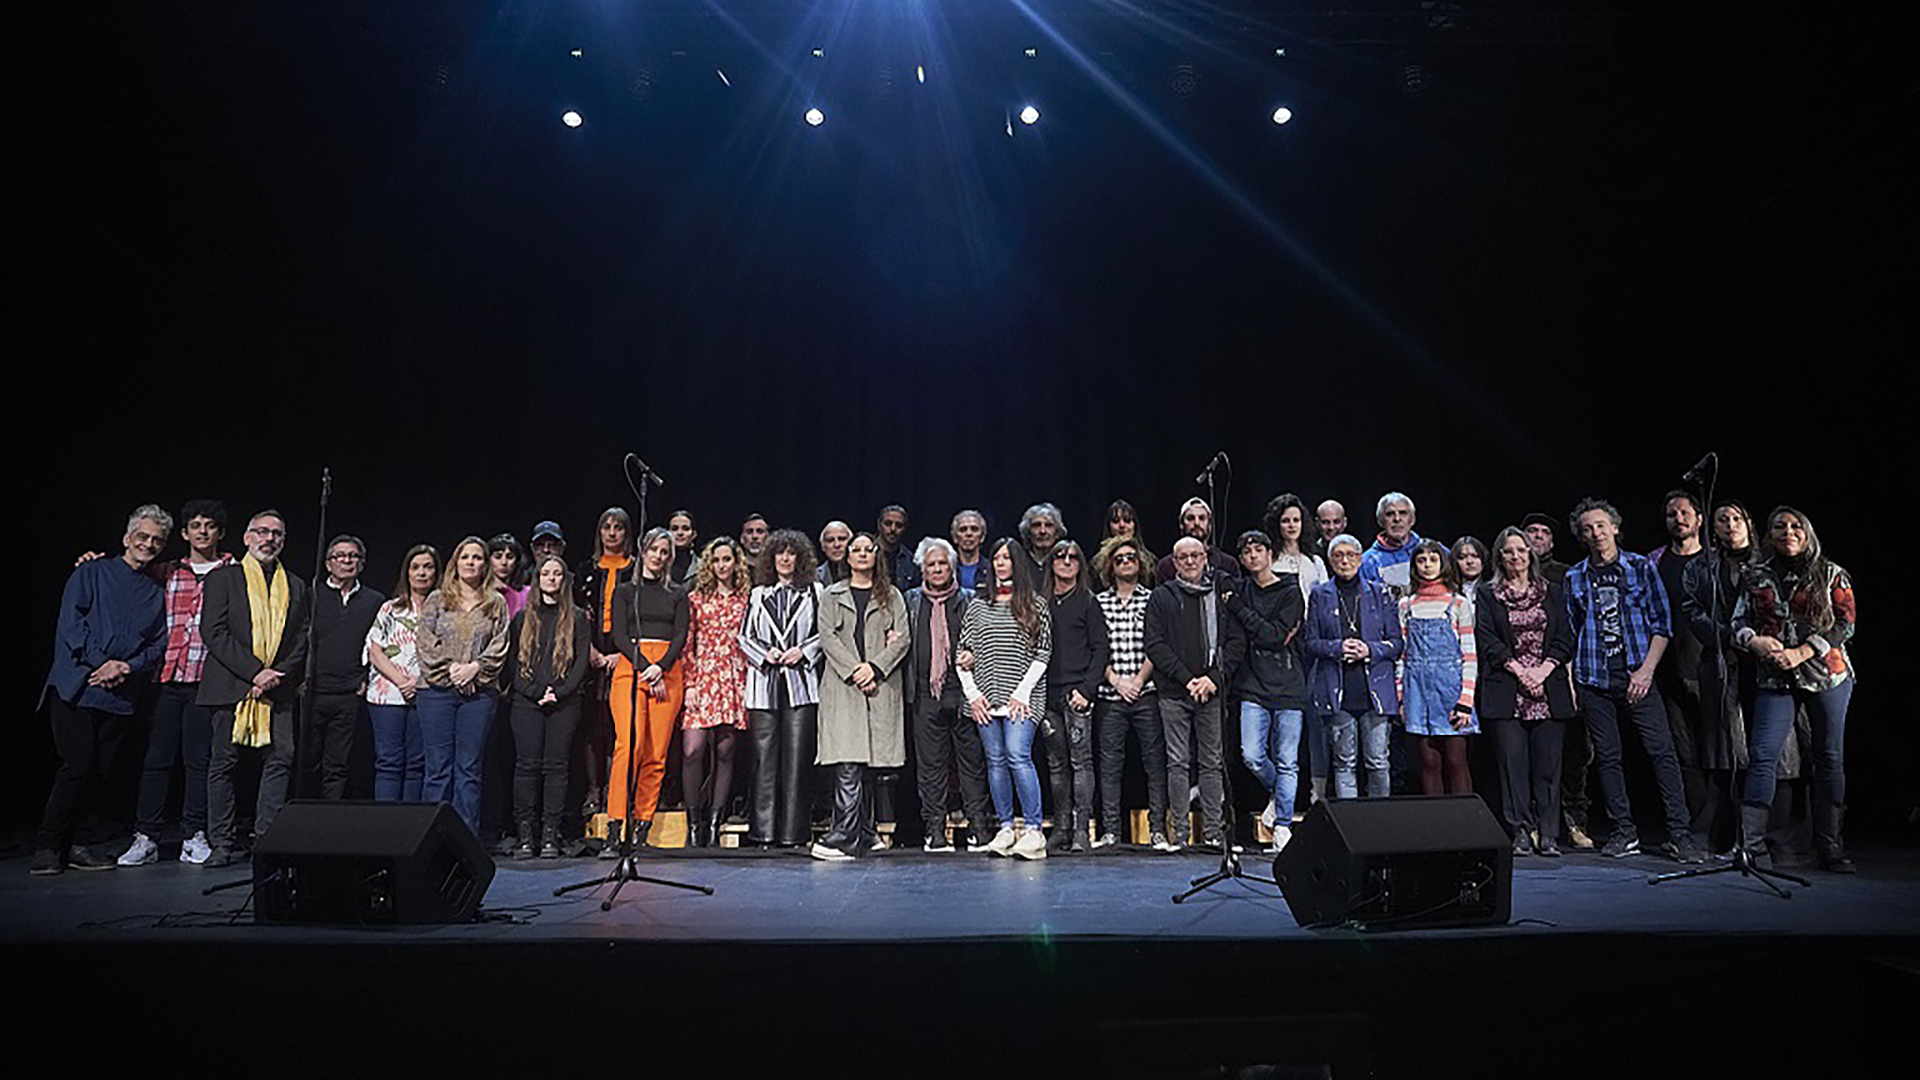 23 familias de músicos interpretan "No tiene olvido el amor", la canción compuesta por Víctor Heredia a 28 años del atentado a la sede de AMIA